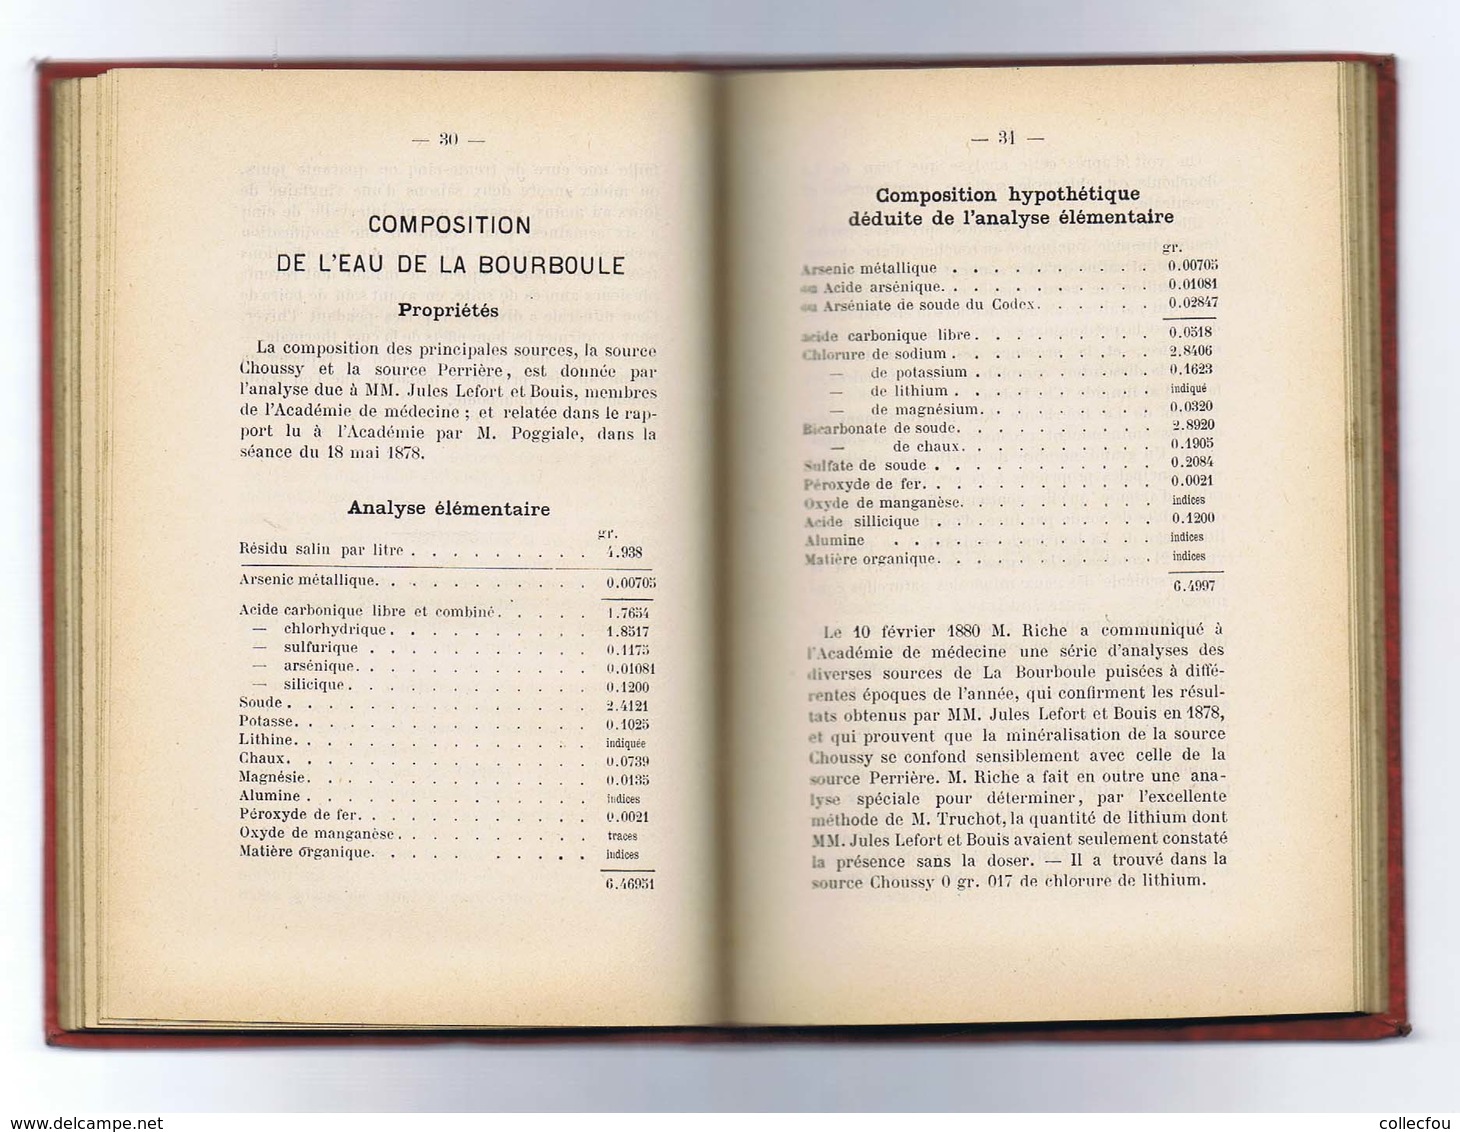 LA BOURBOULE : Guide touristique édité en 1889. Reliure d'époque. Carte. Nombreuses réclames locales. Voir 8 photos.